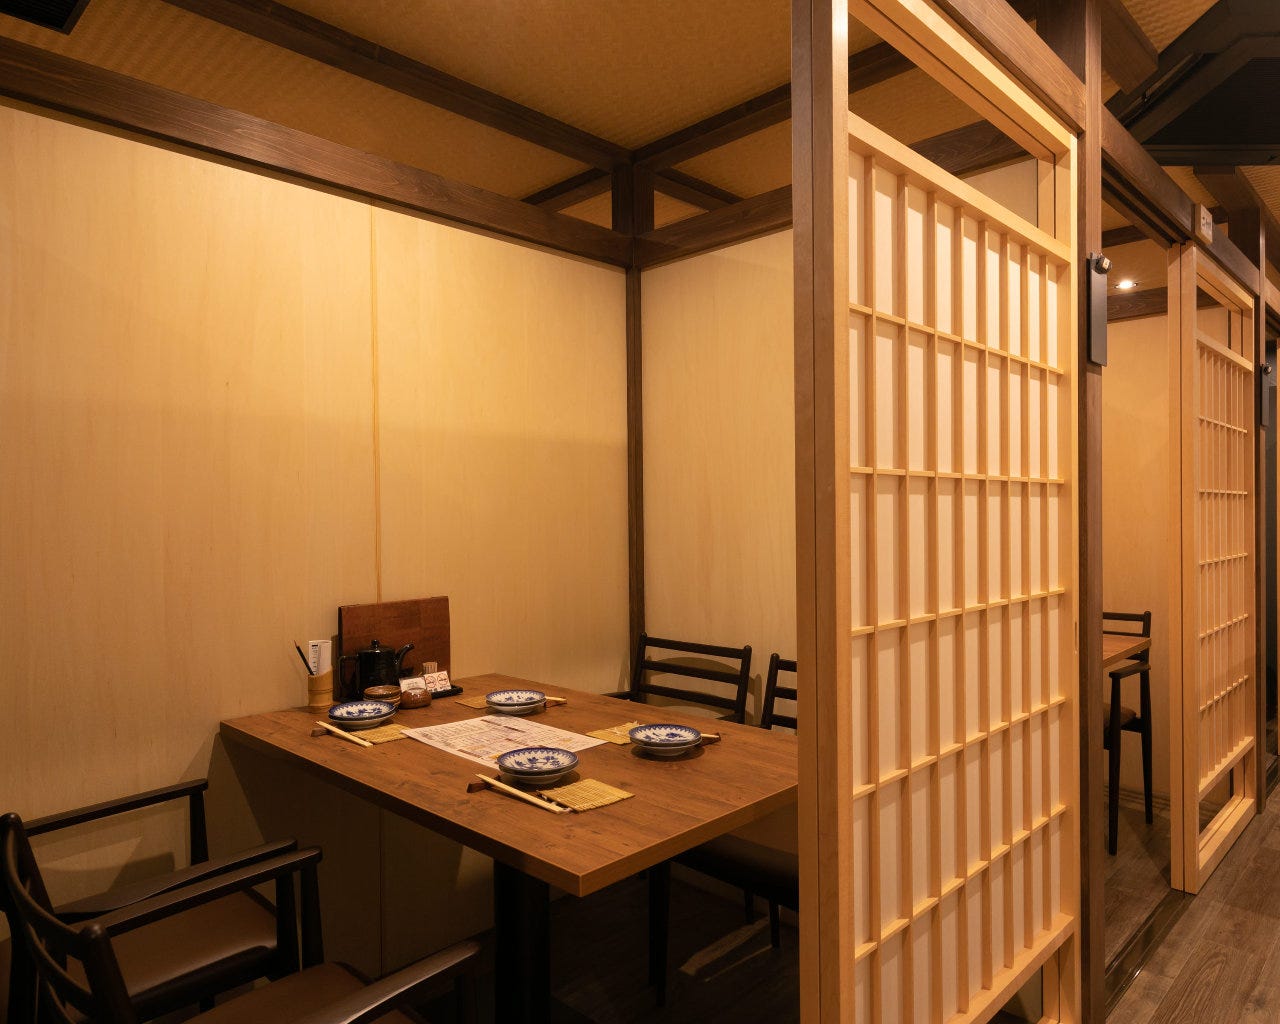 個室あり 梅田 北新地の接待 会食におすすめしたい人気店 日経 大人のレストランガイド